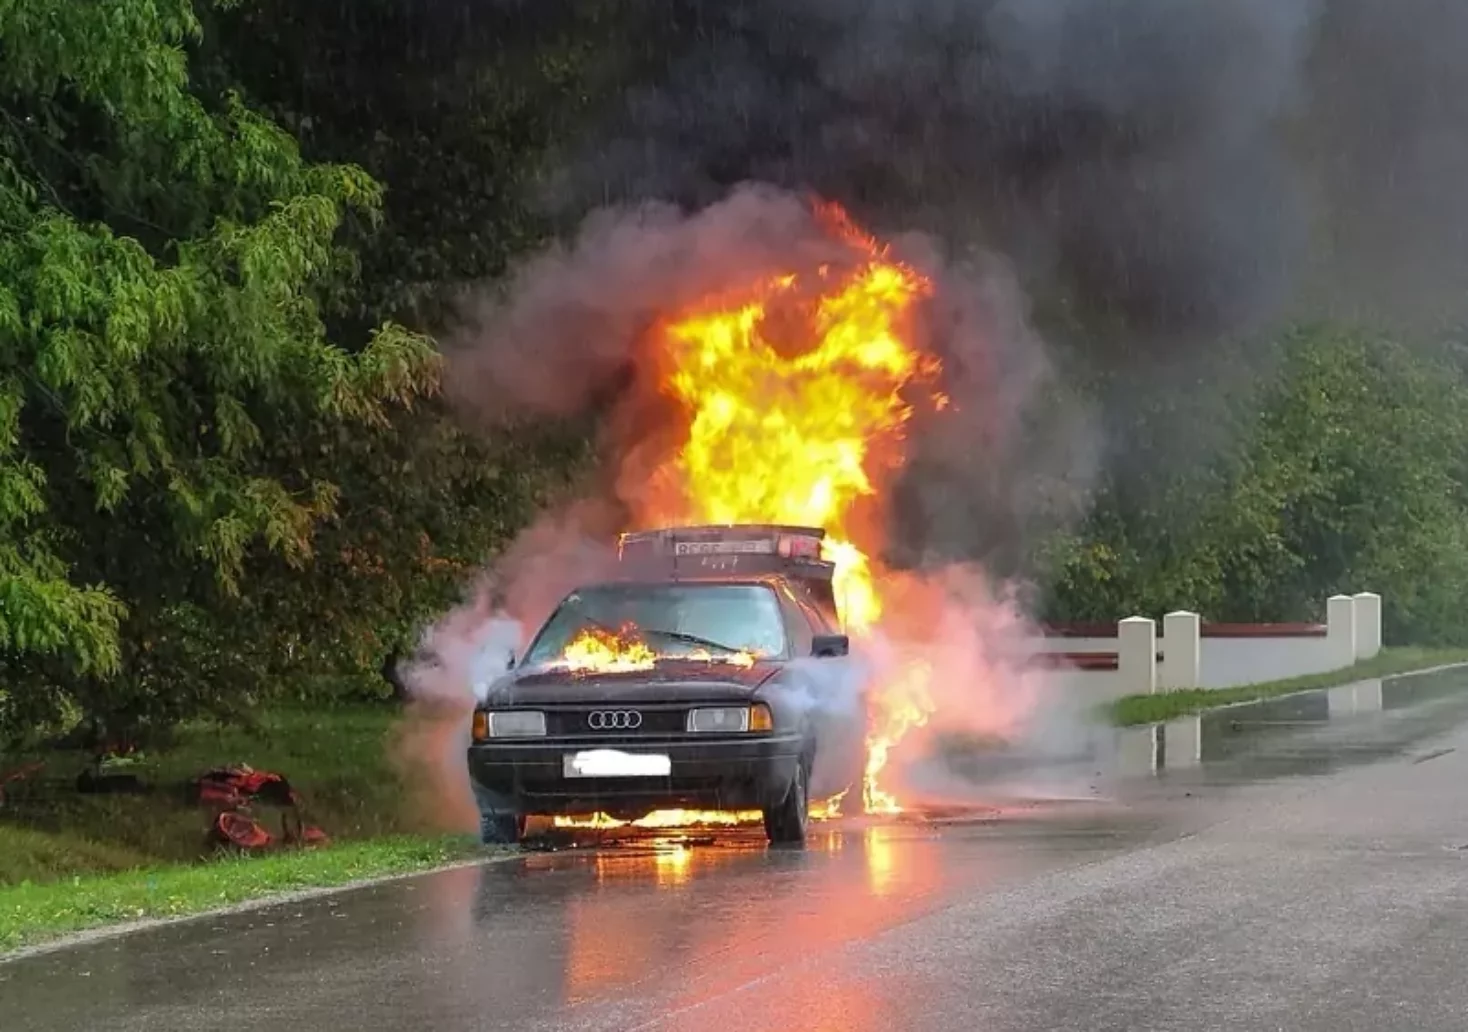 Symbolfoto auf 5min.at zeigt ein brennendes Auto am Straßenrand stehen.